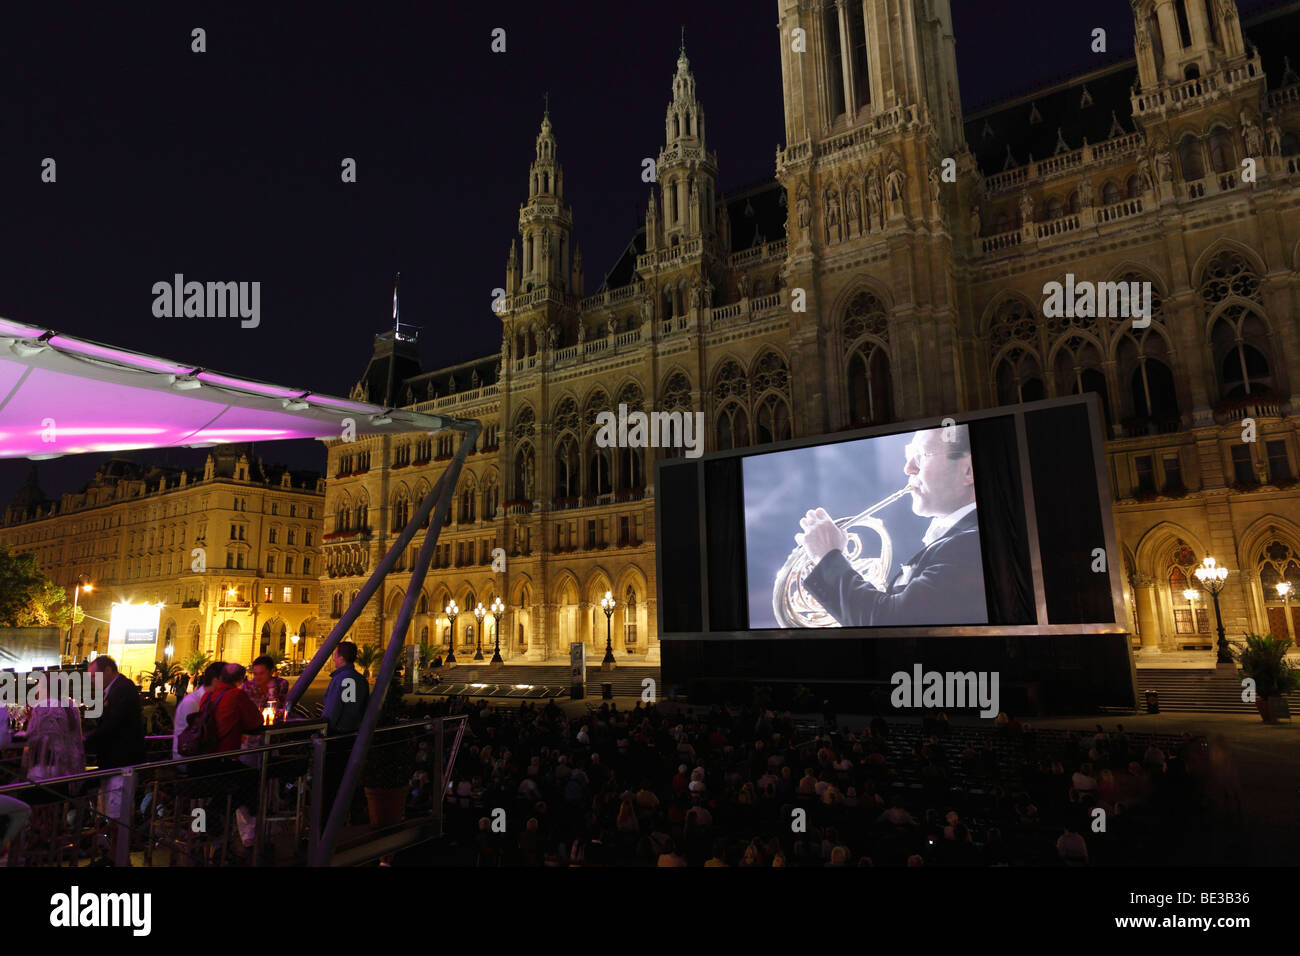 Festival du Film sur la Rathausplatz place de l'hôtel de ville, hôtel de ville, Vienne, Autriche, Europe Banque D'Images